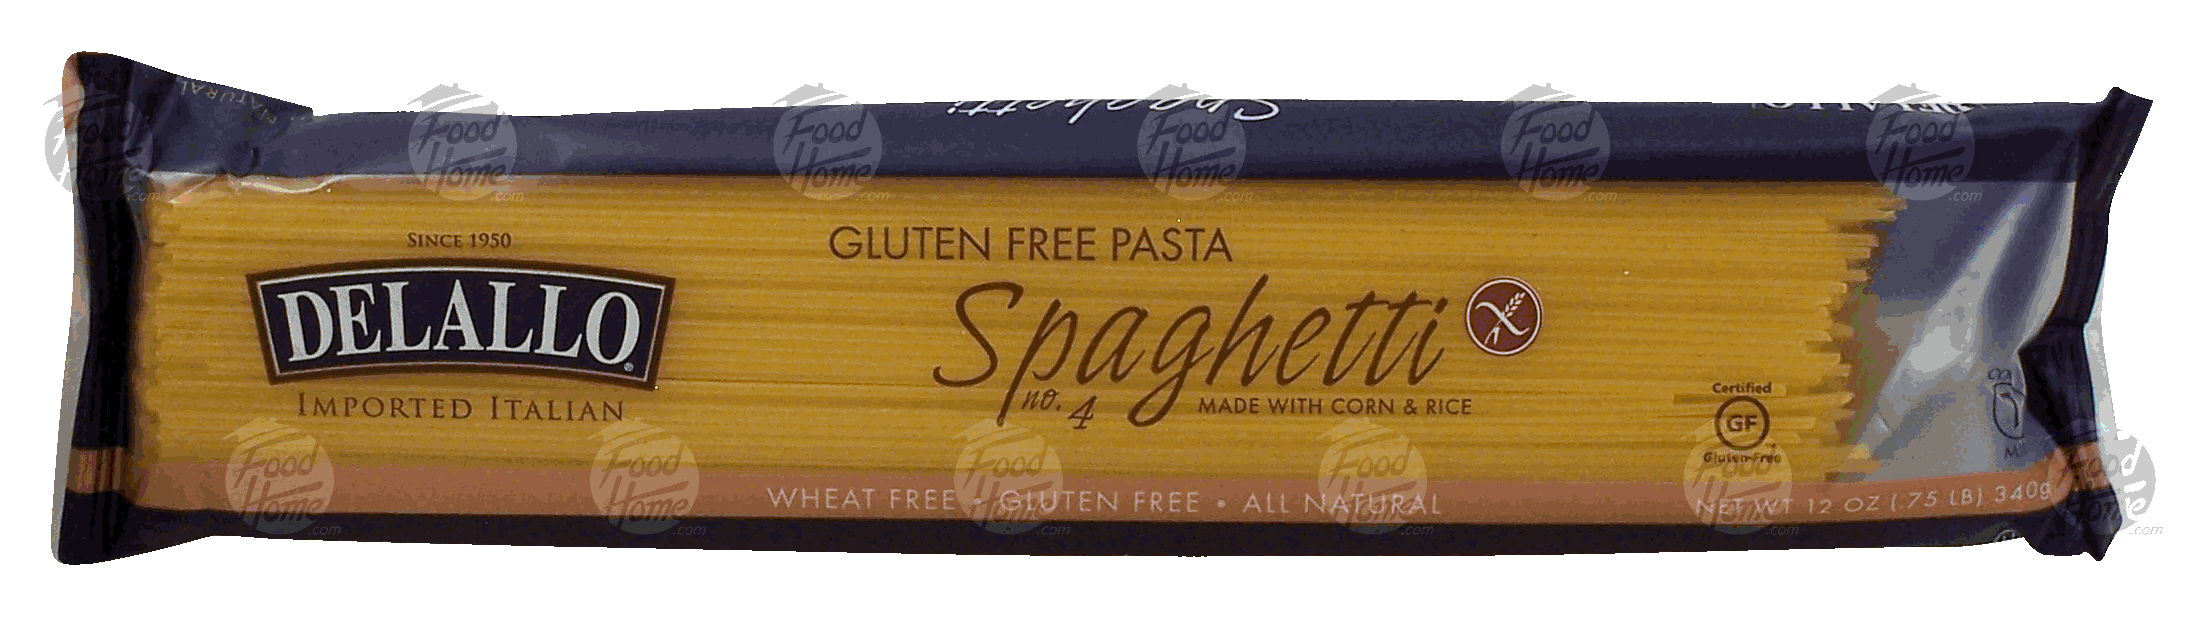 Delallo  spaghetti gluten free pasta made with corn & rice Full-Size Picture